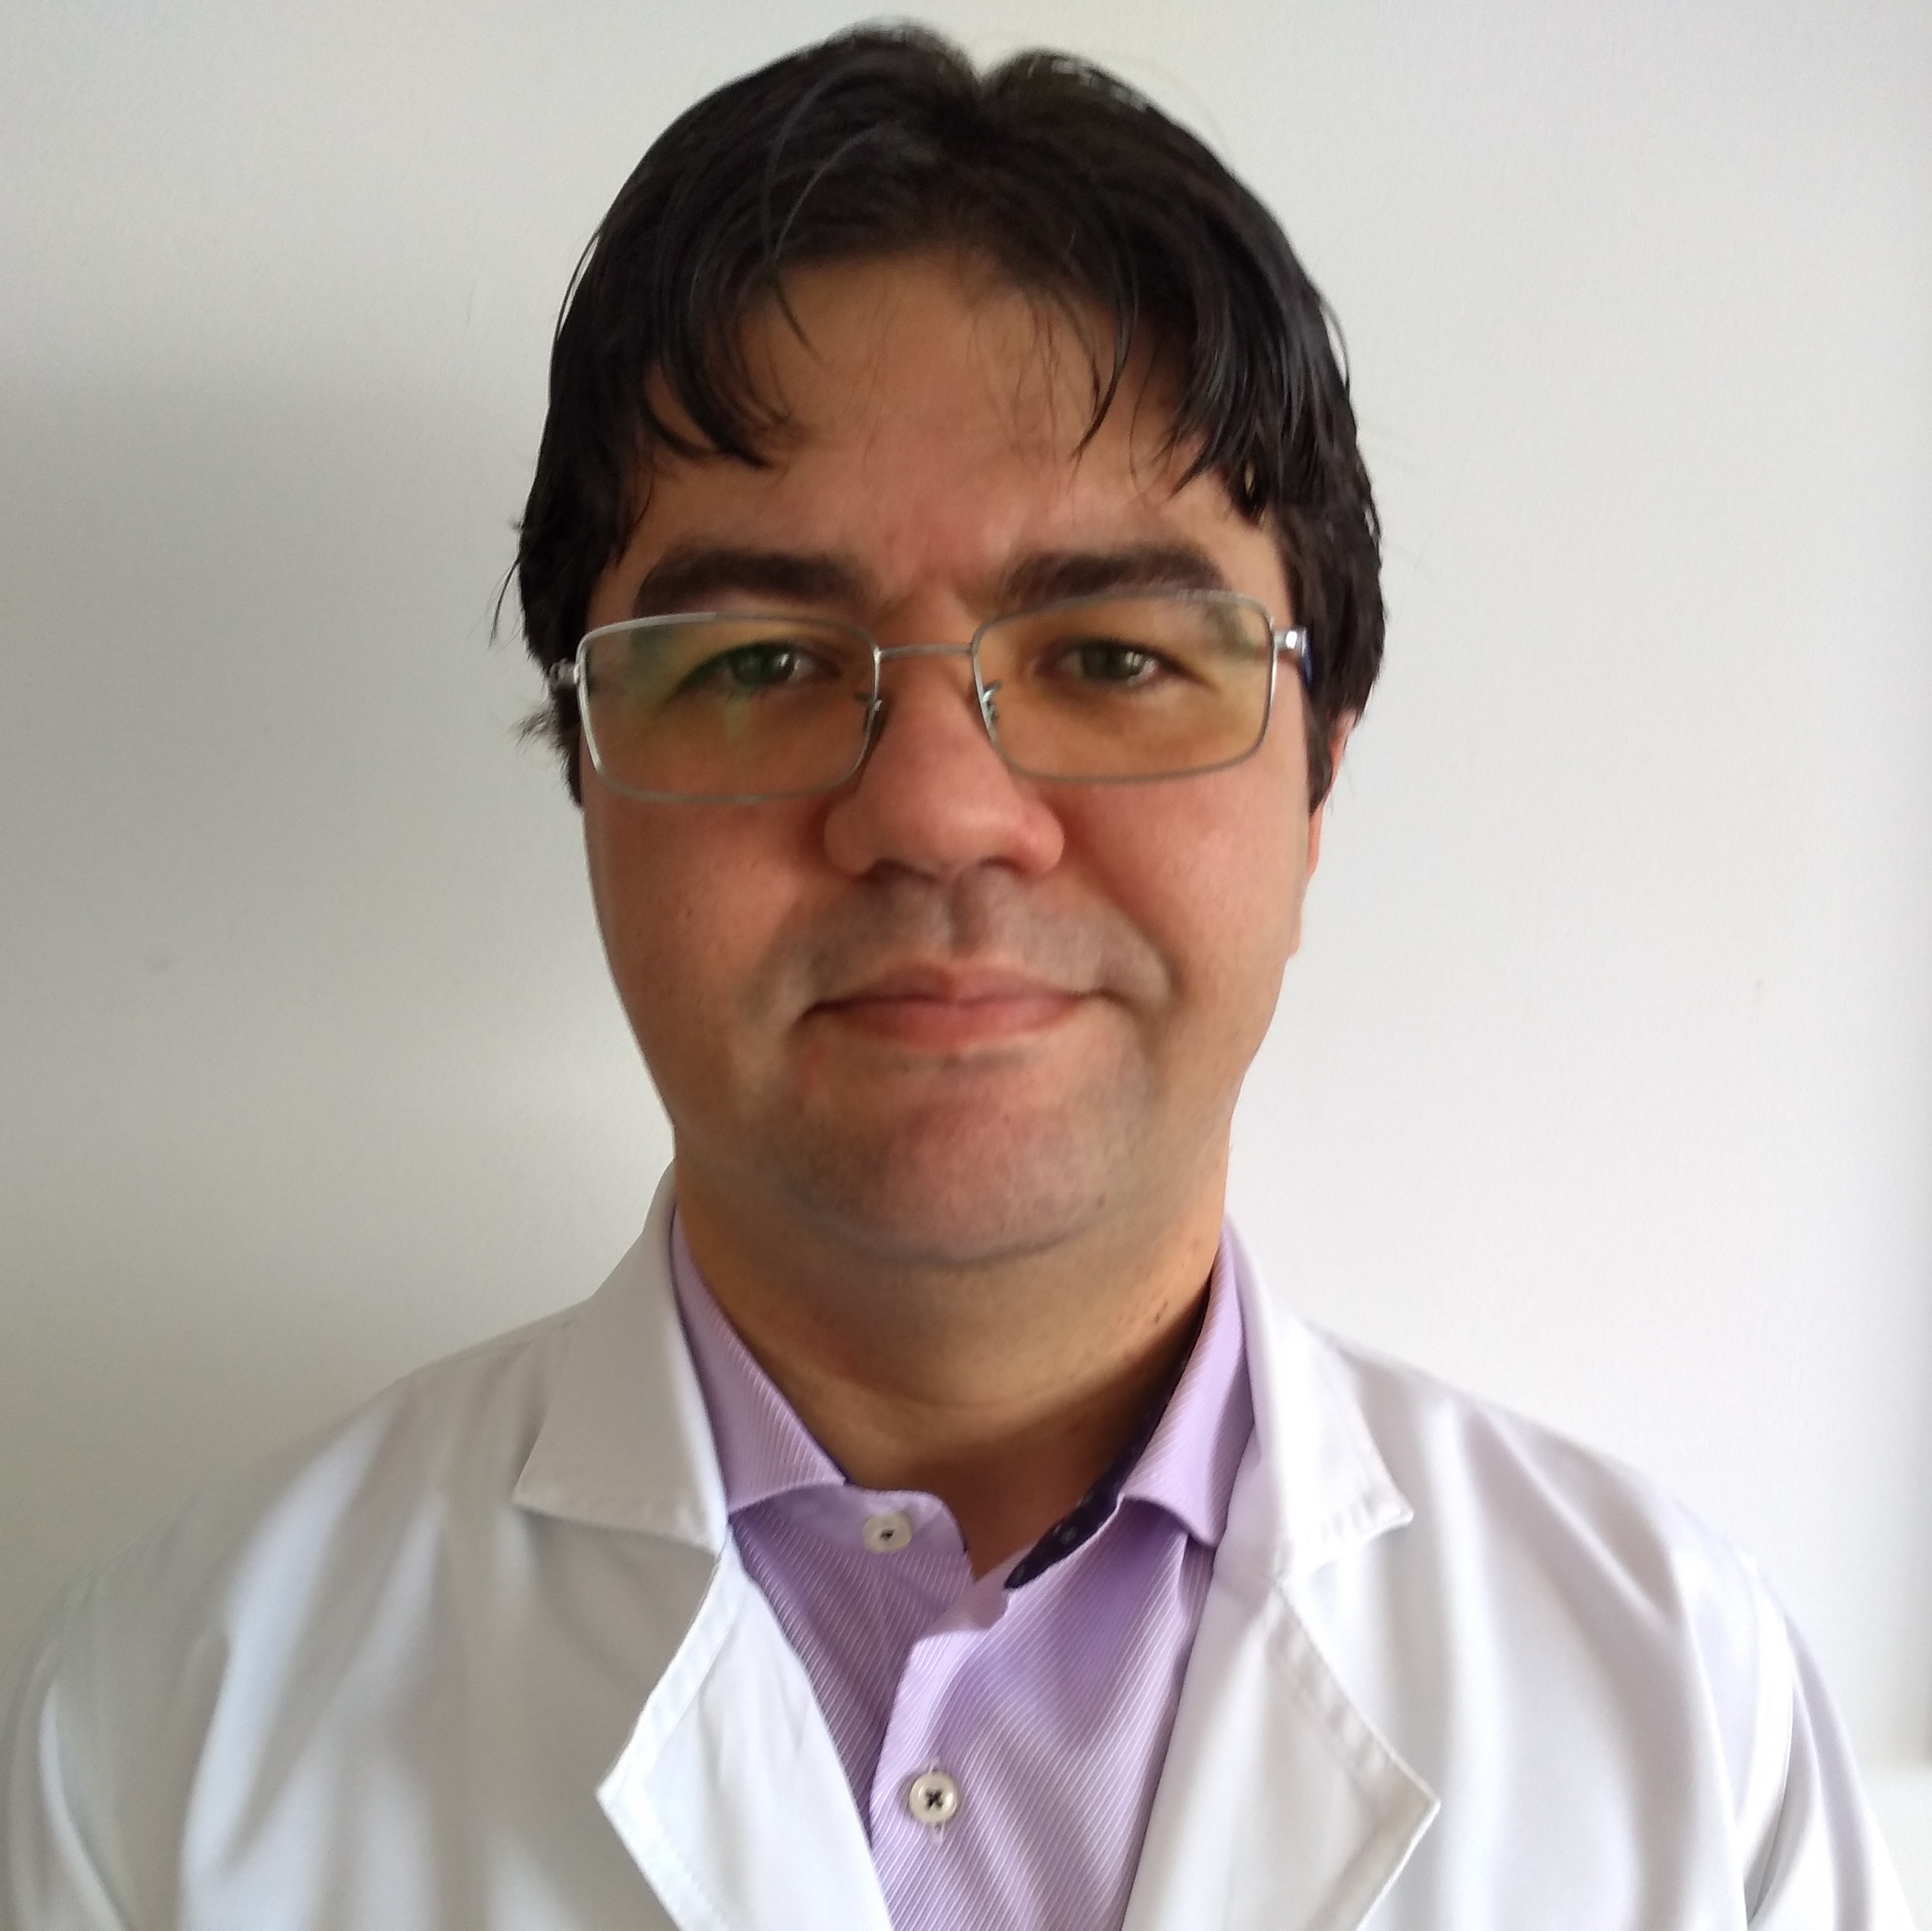 Dr Mauro Paraiba Cavalcanti